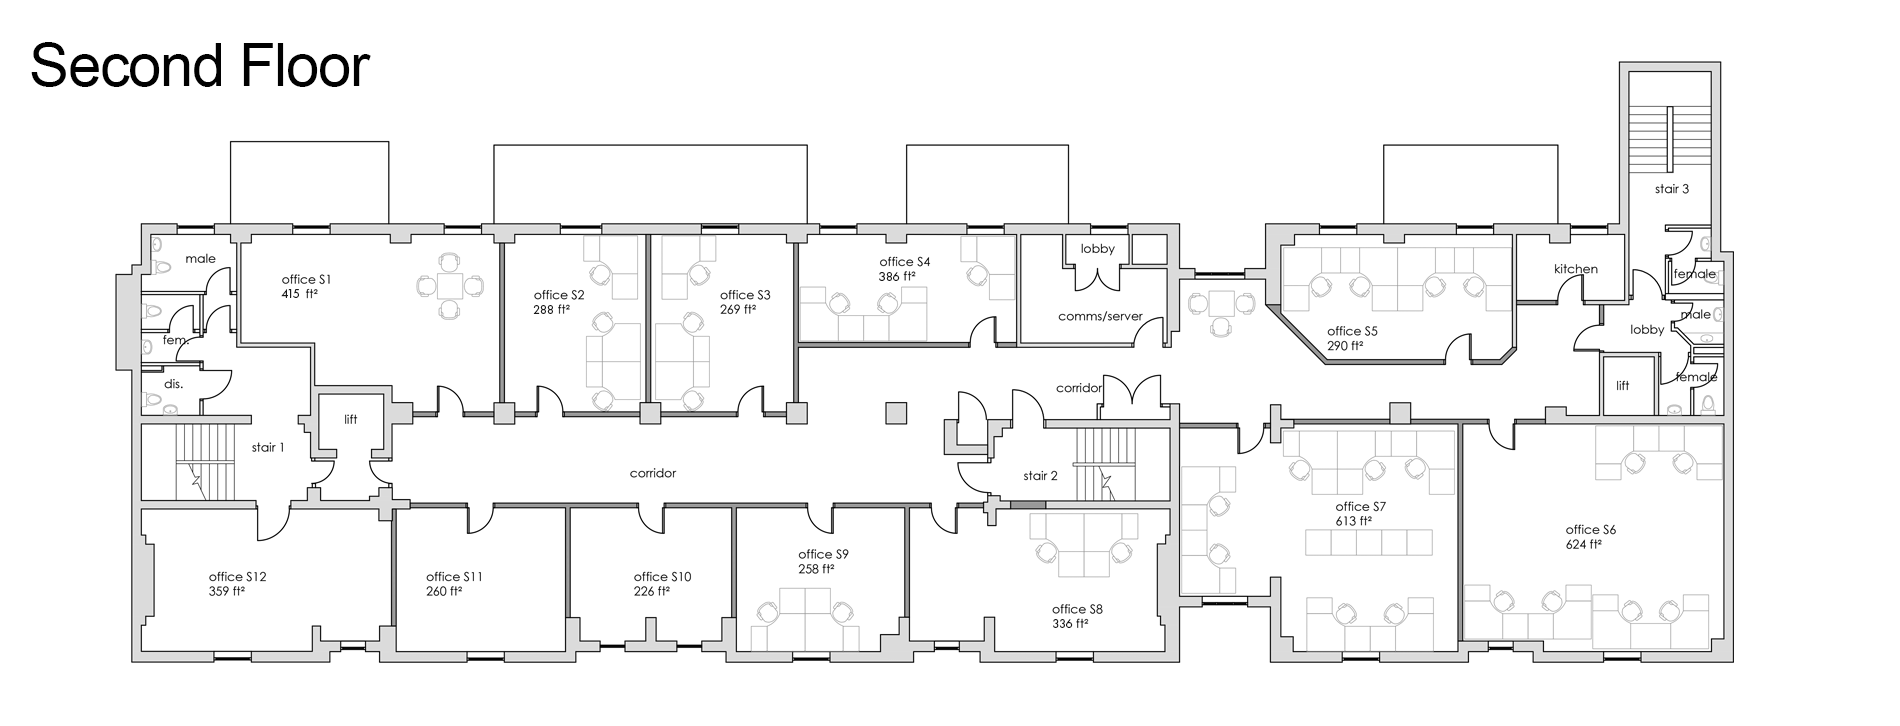 Second Floor Office Plan